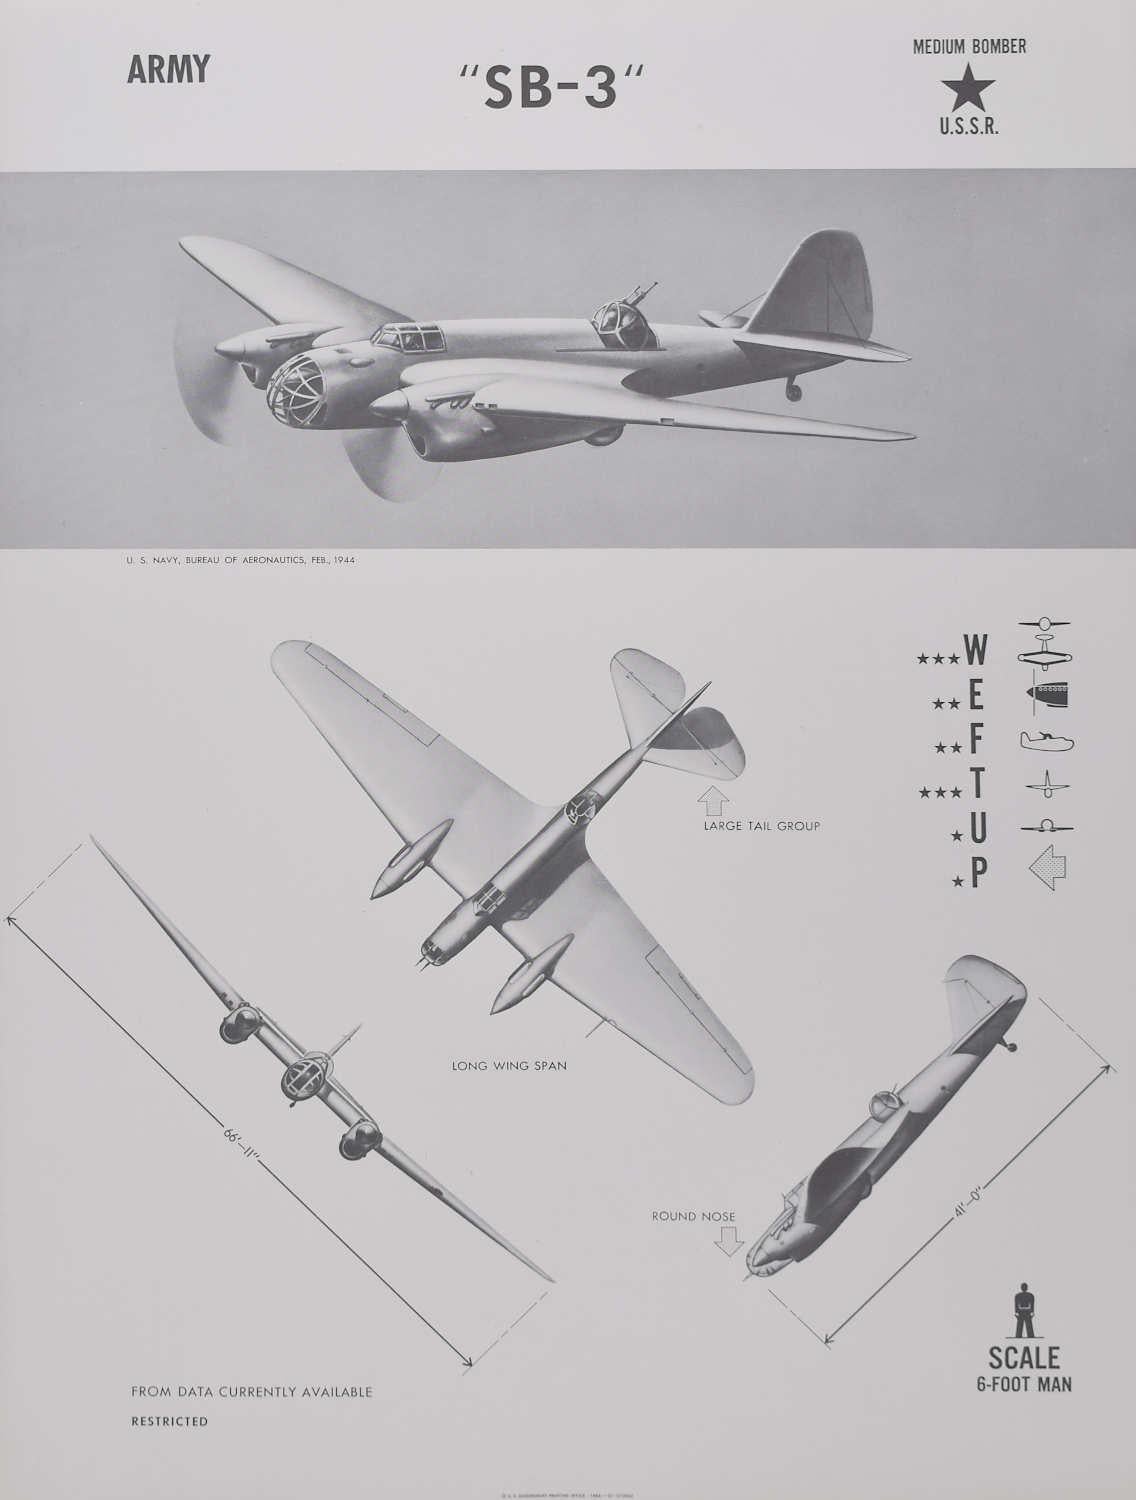 1944 "SB-3" Cartel de identificación del avión bombardero medio ruso de la URSS 2ª Guerra Mundial - Print de Unknown